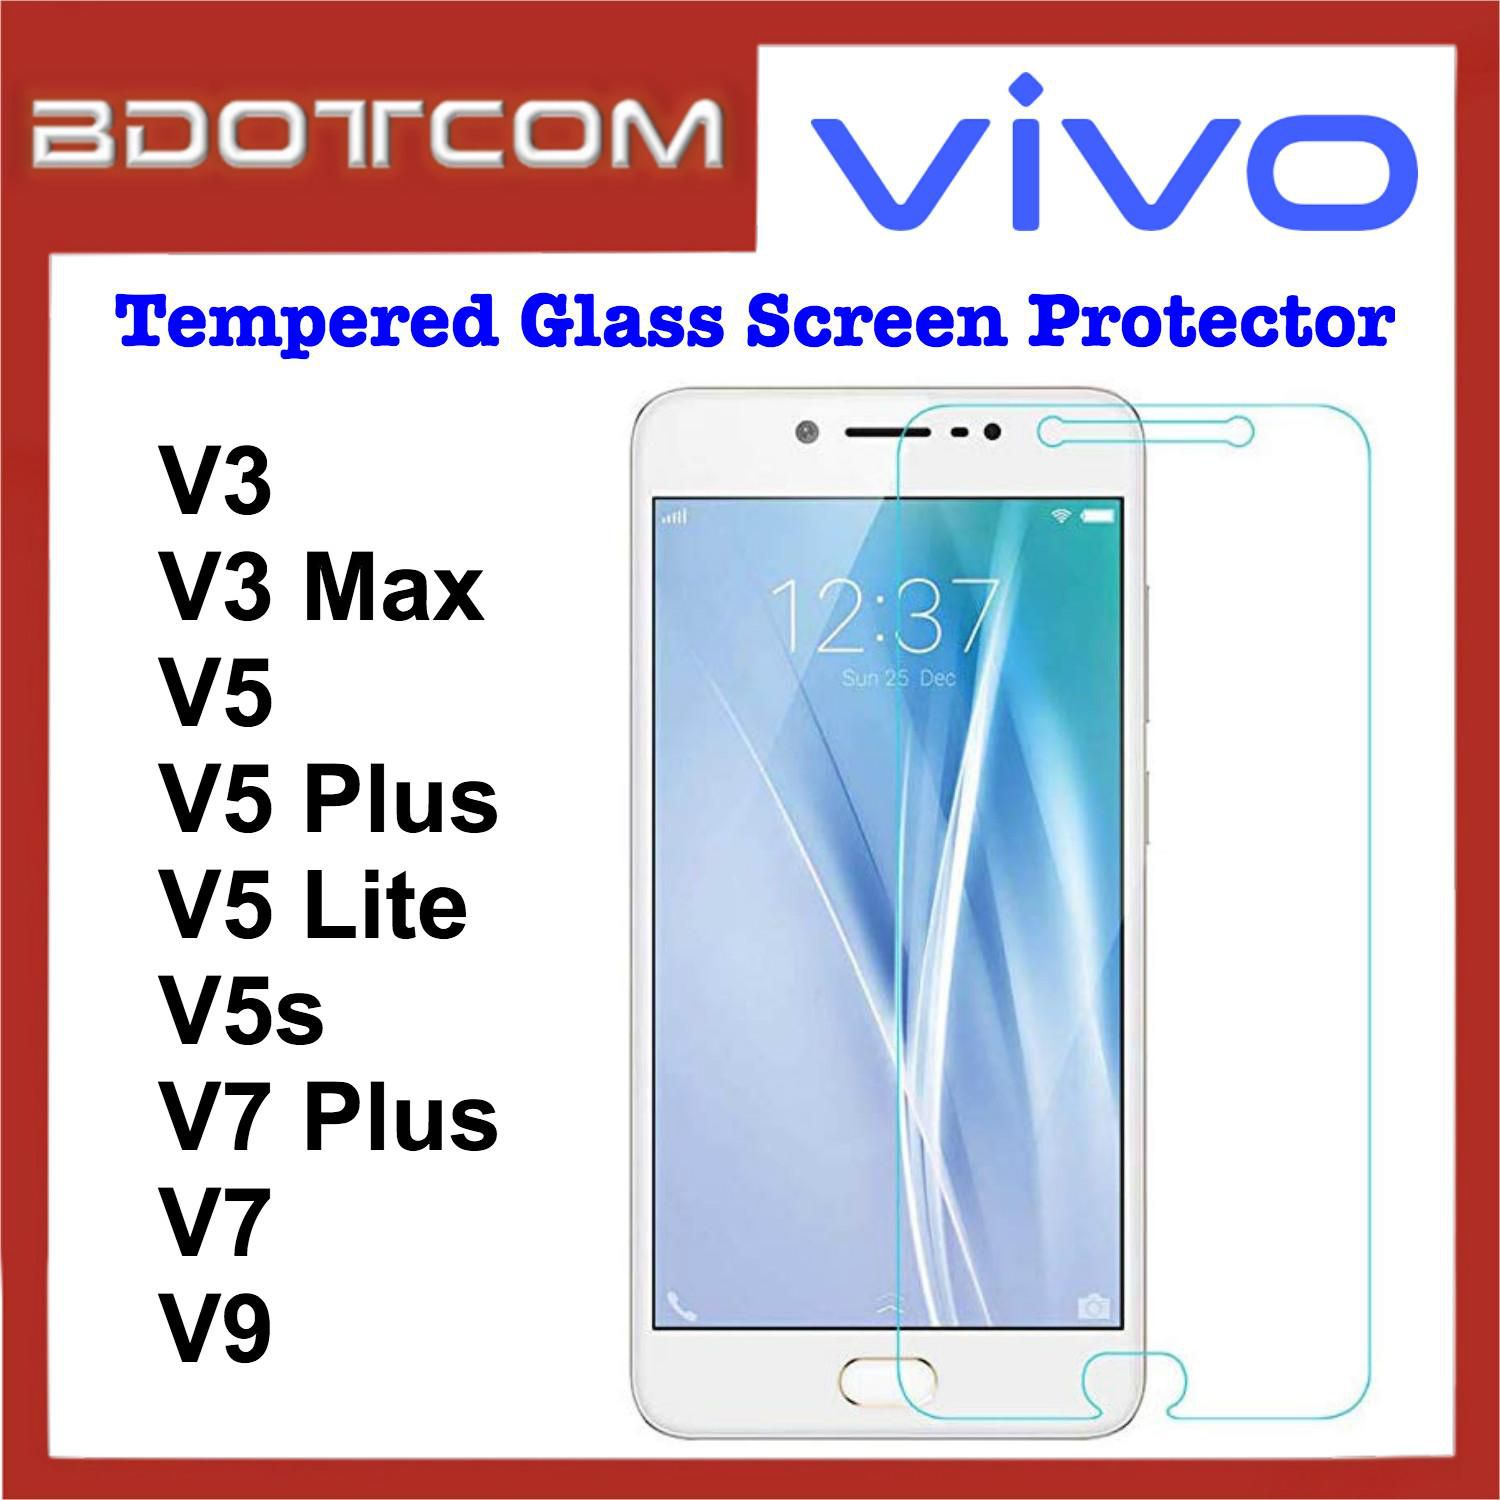 Bdotcom Tempered Glass Screen Protector for Vivo V3